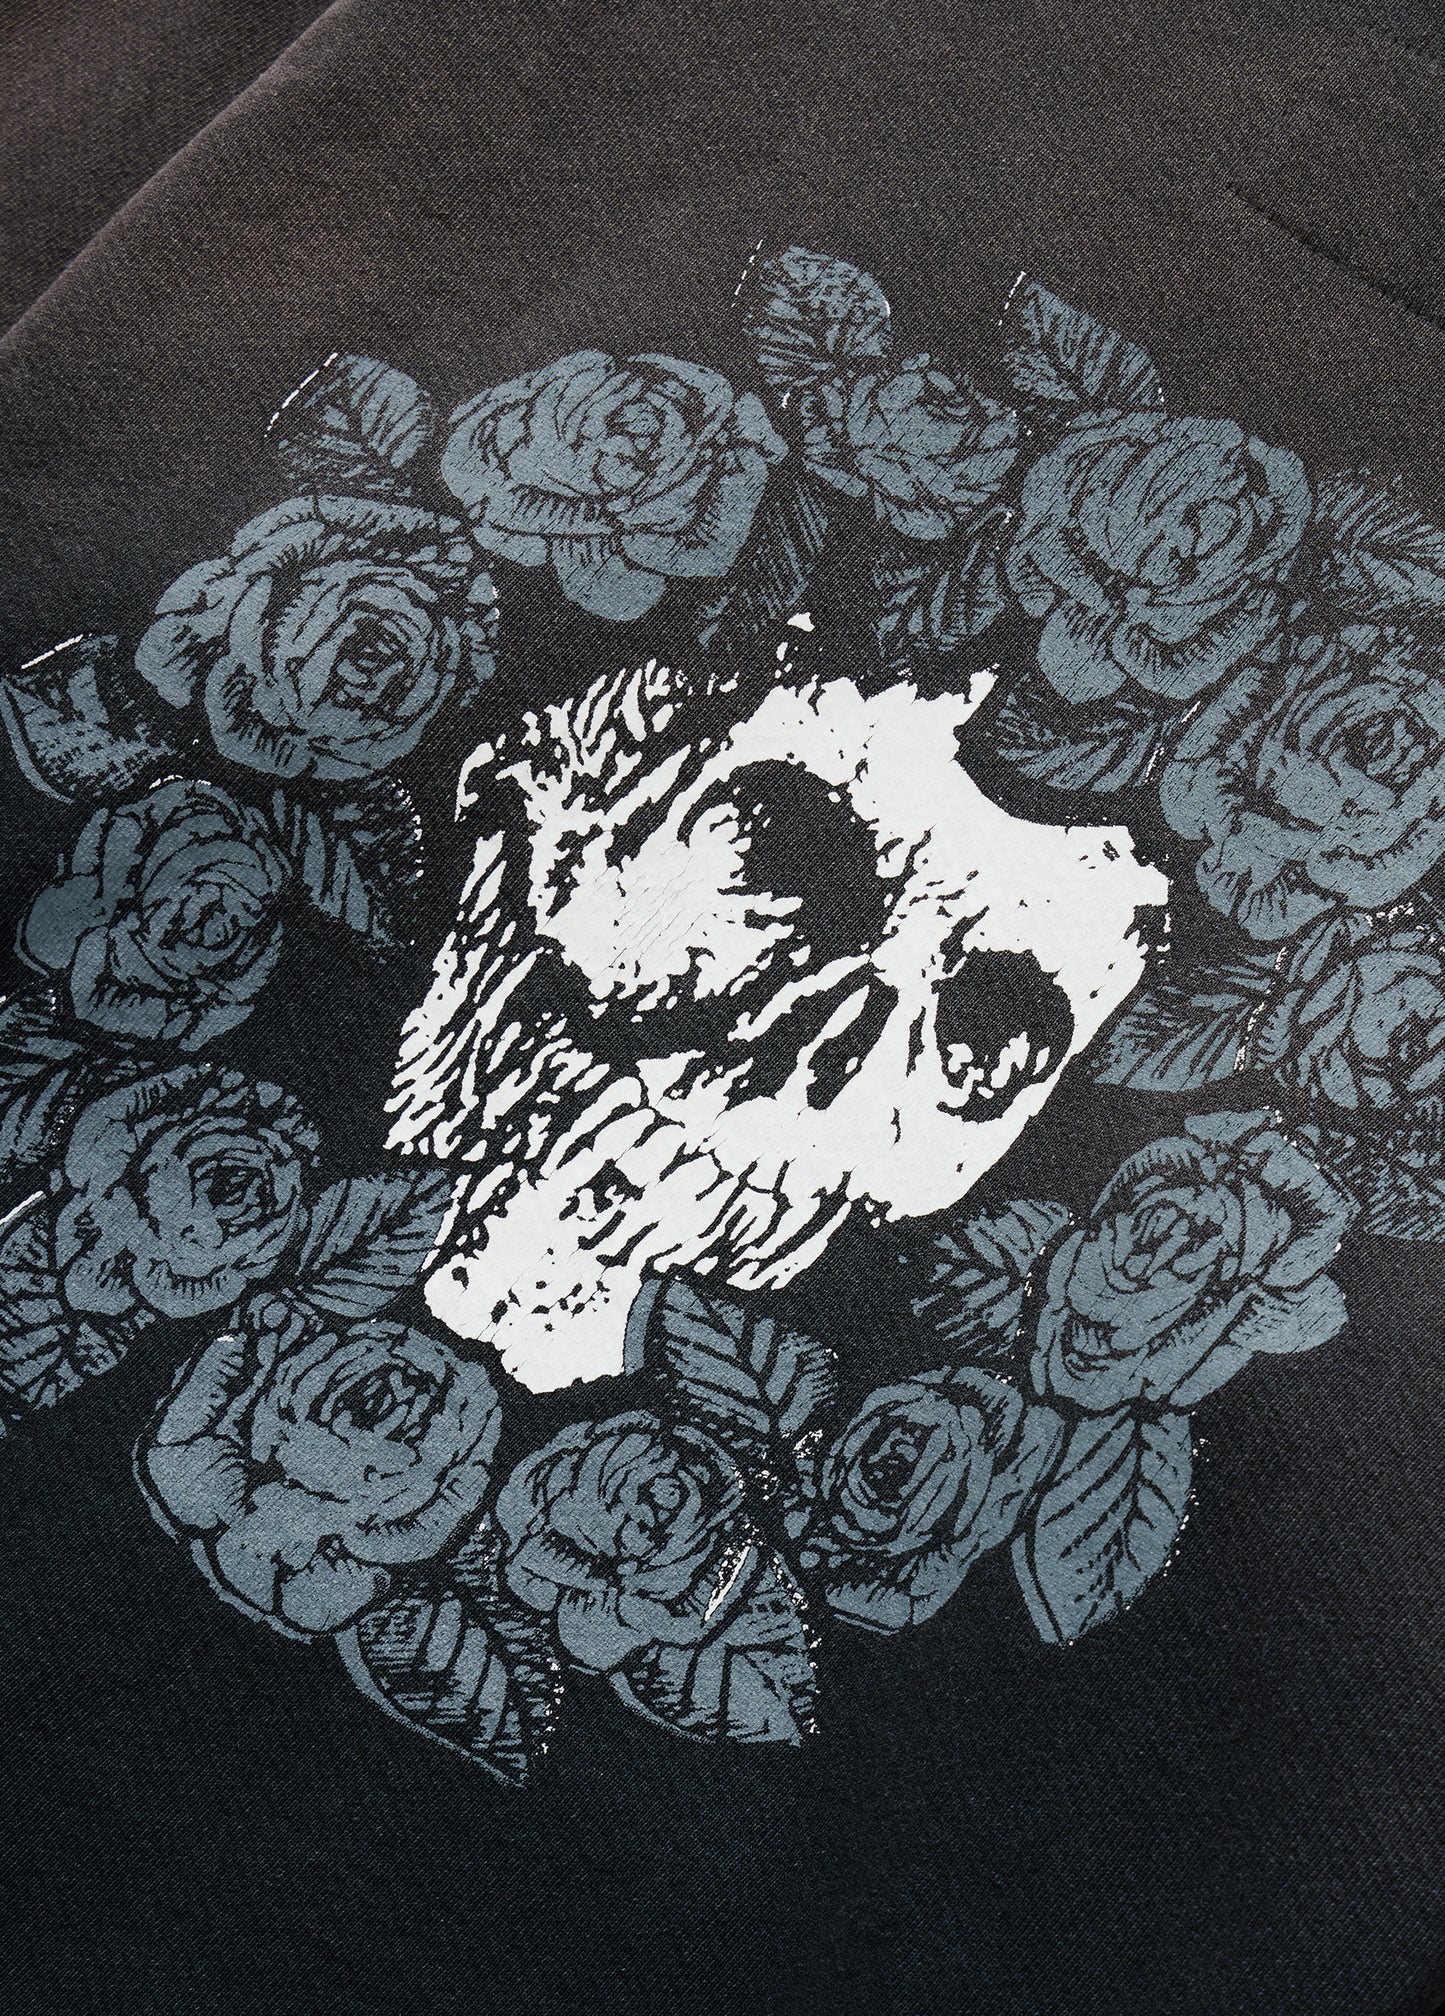 Wreath of Roses Hooded Sweatshirt | Black